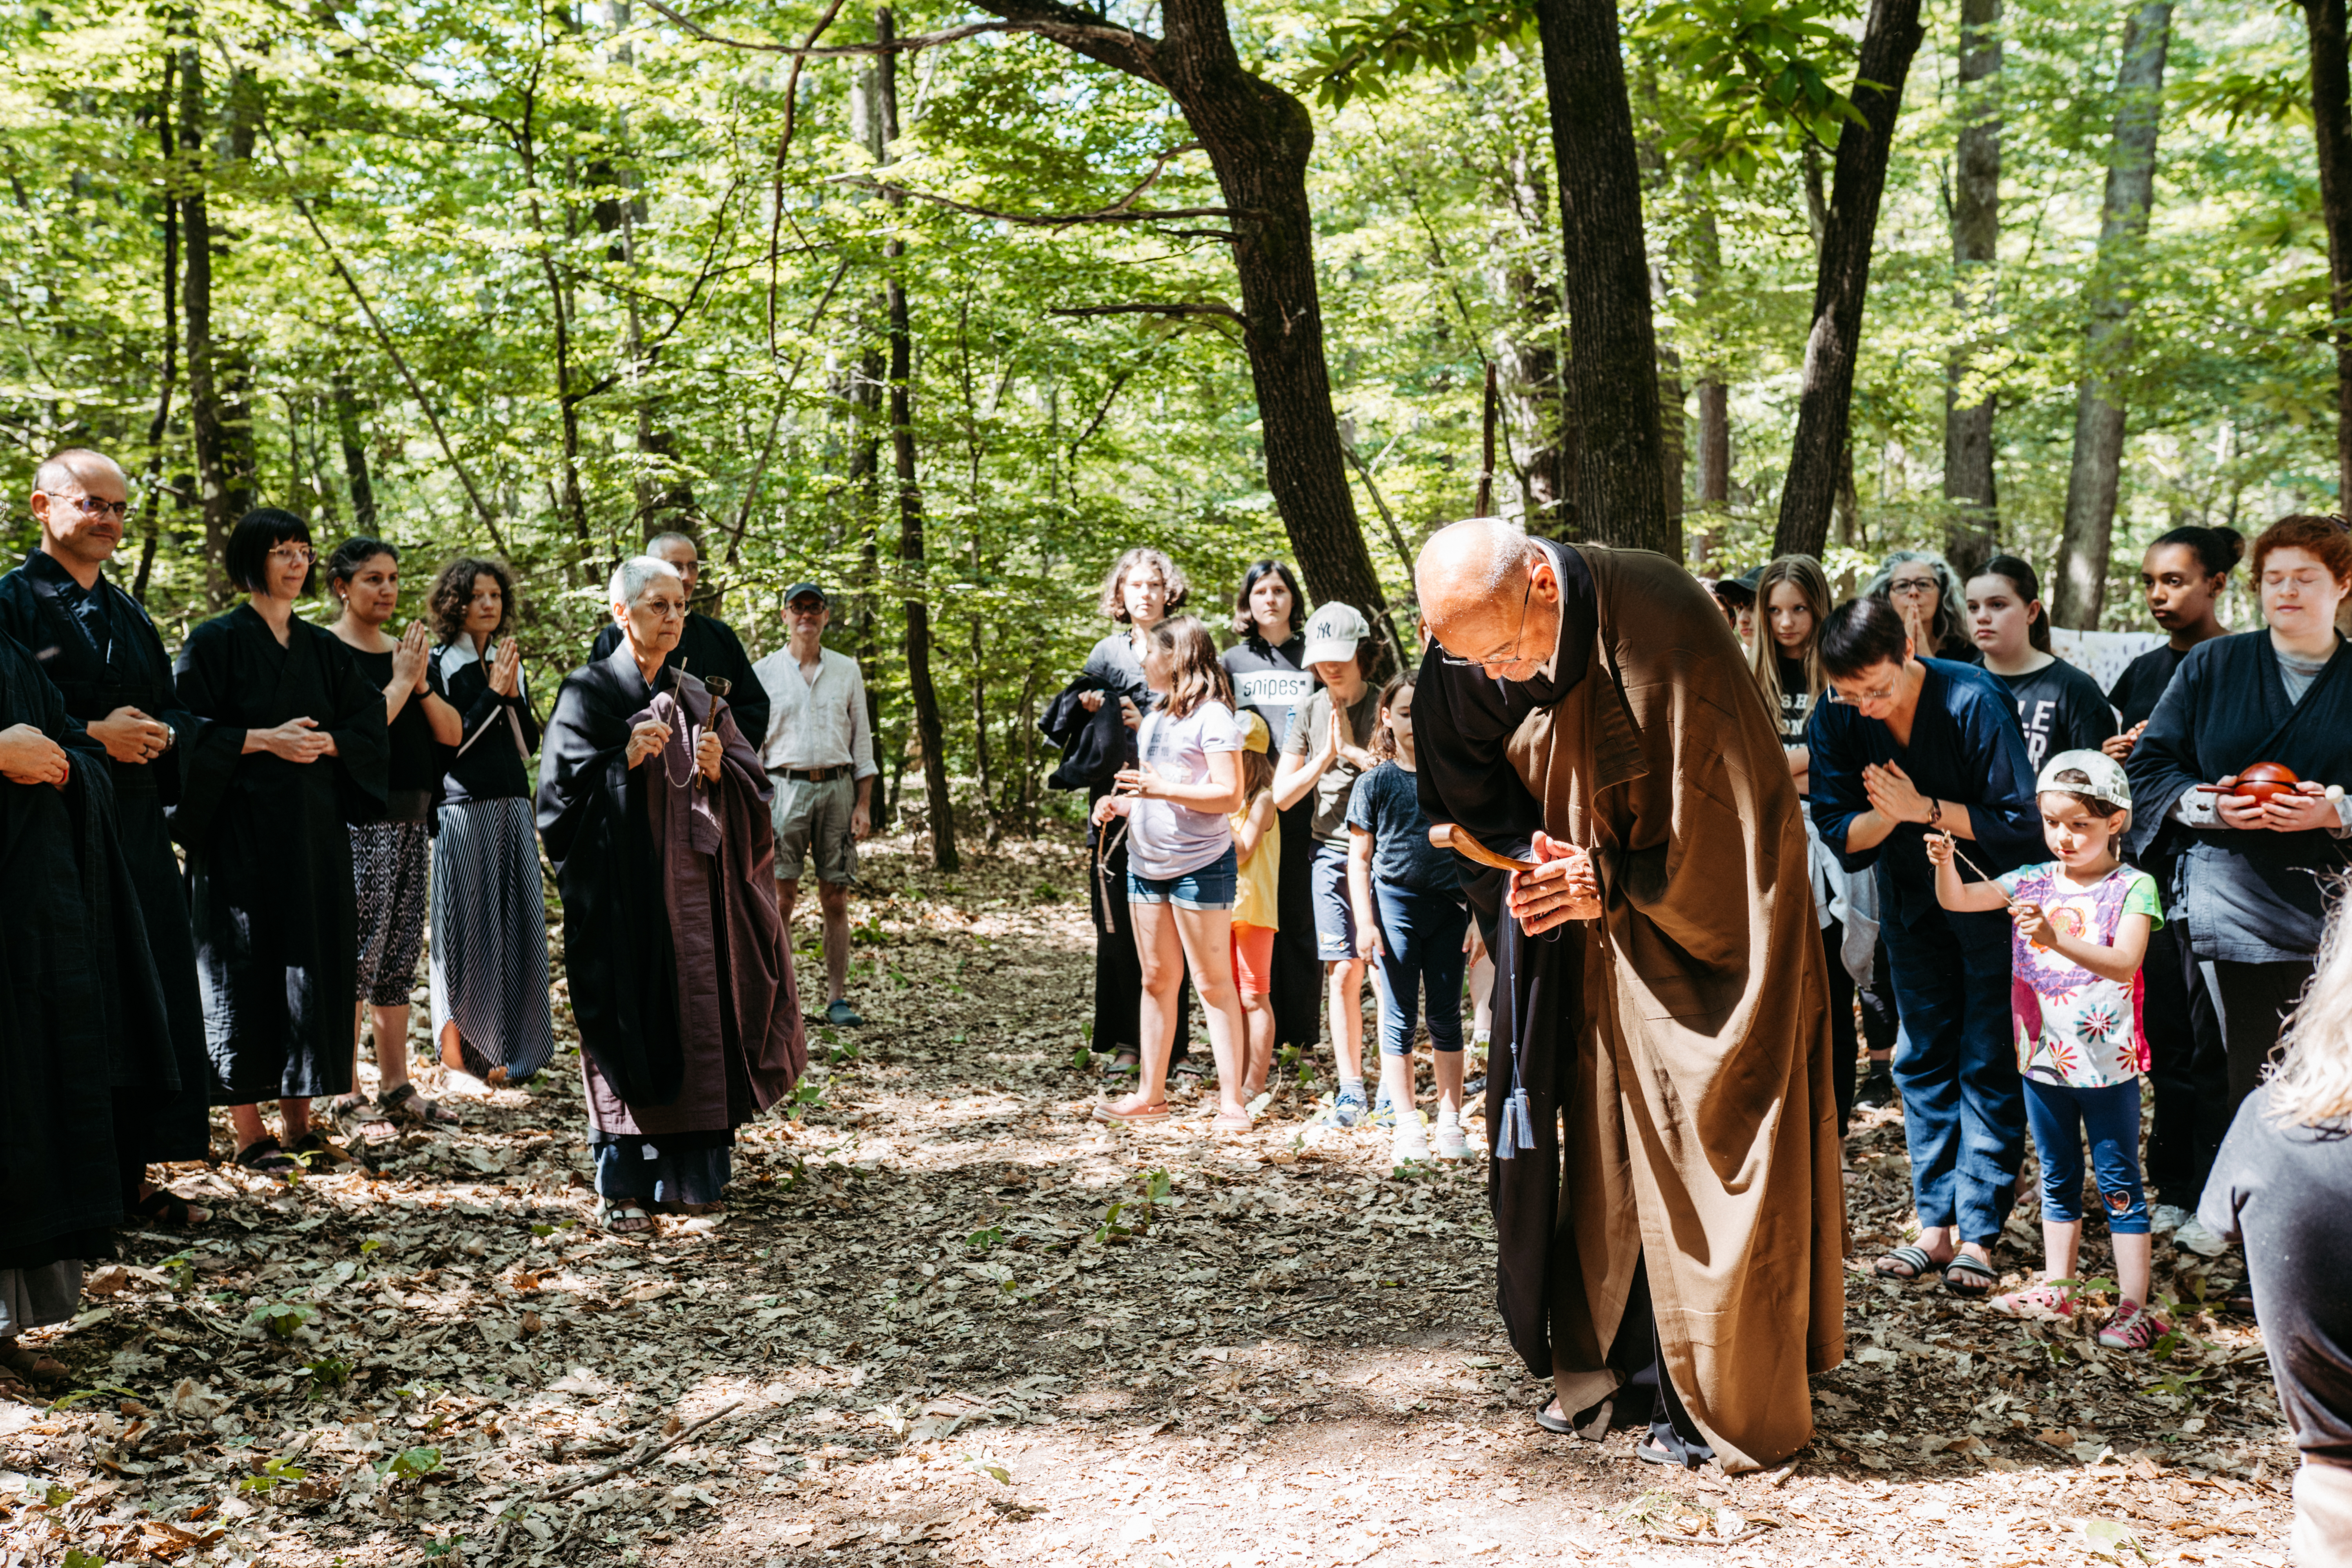 Cérémonie zen réalisée dans la forêt pour inaugurer l'exposition collective éphémère lors de la retraite spirituelle "en famille".